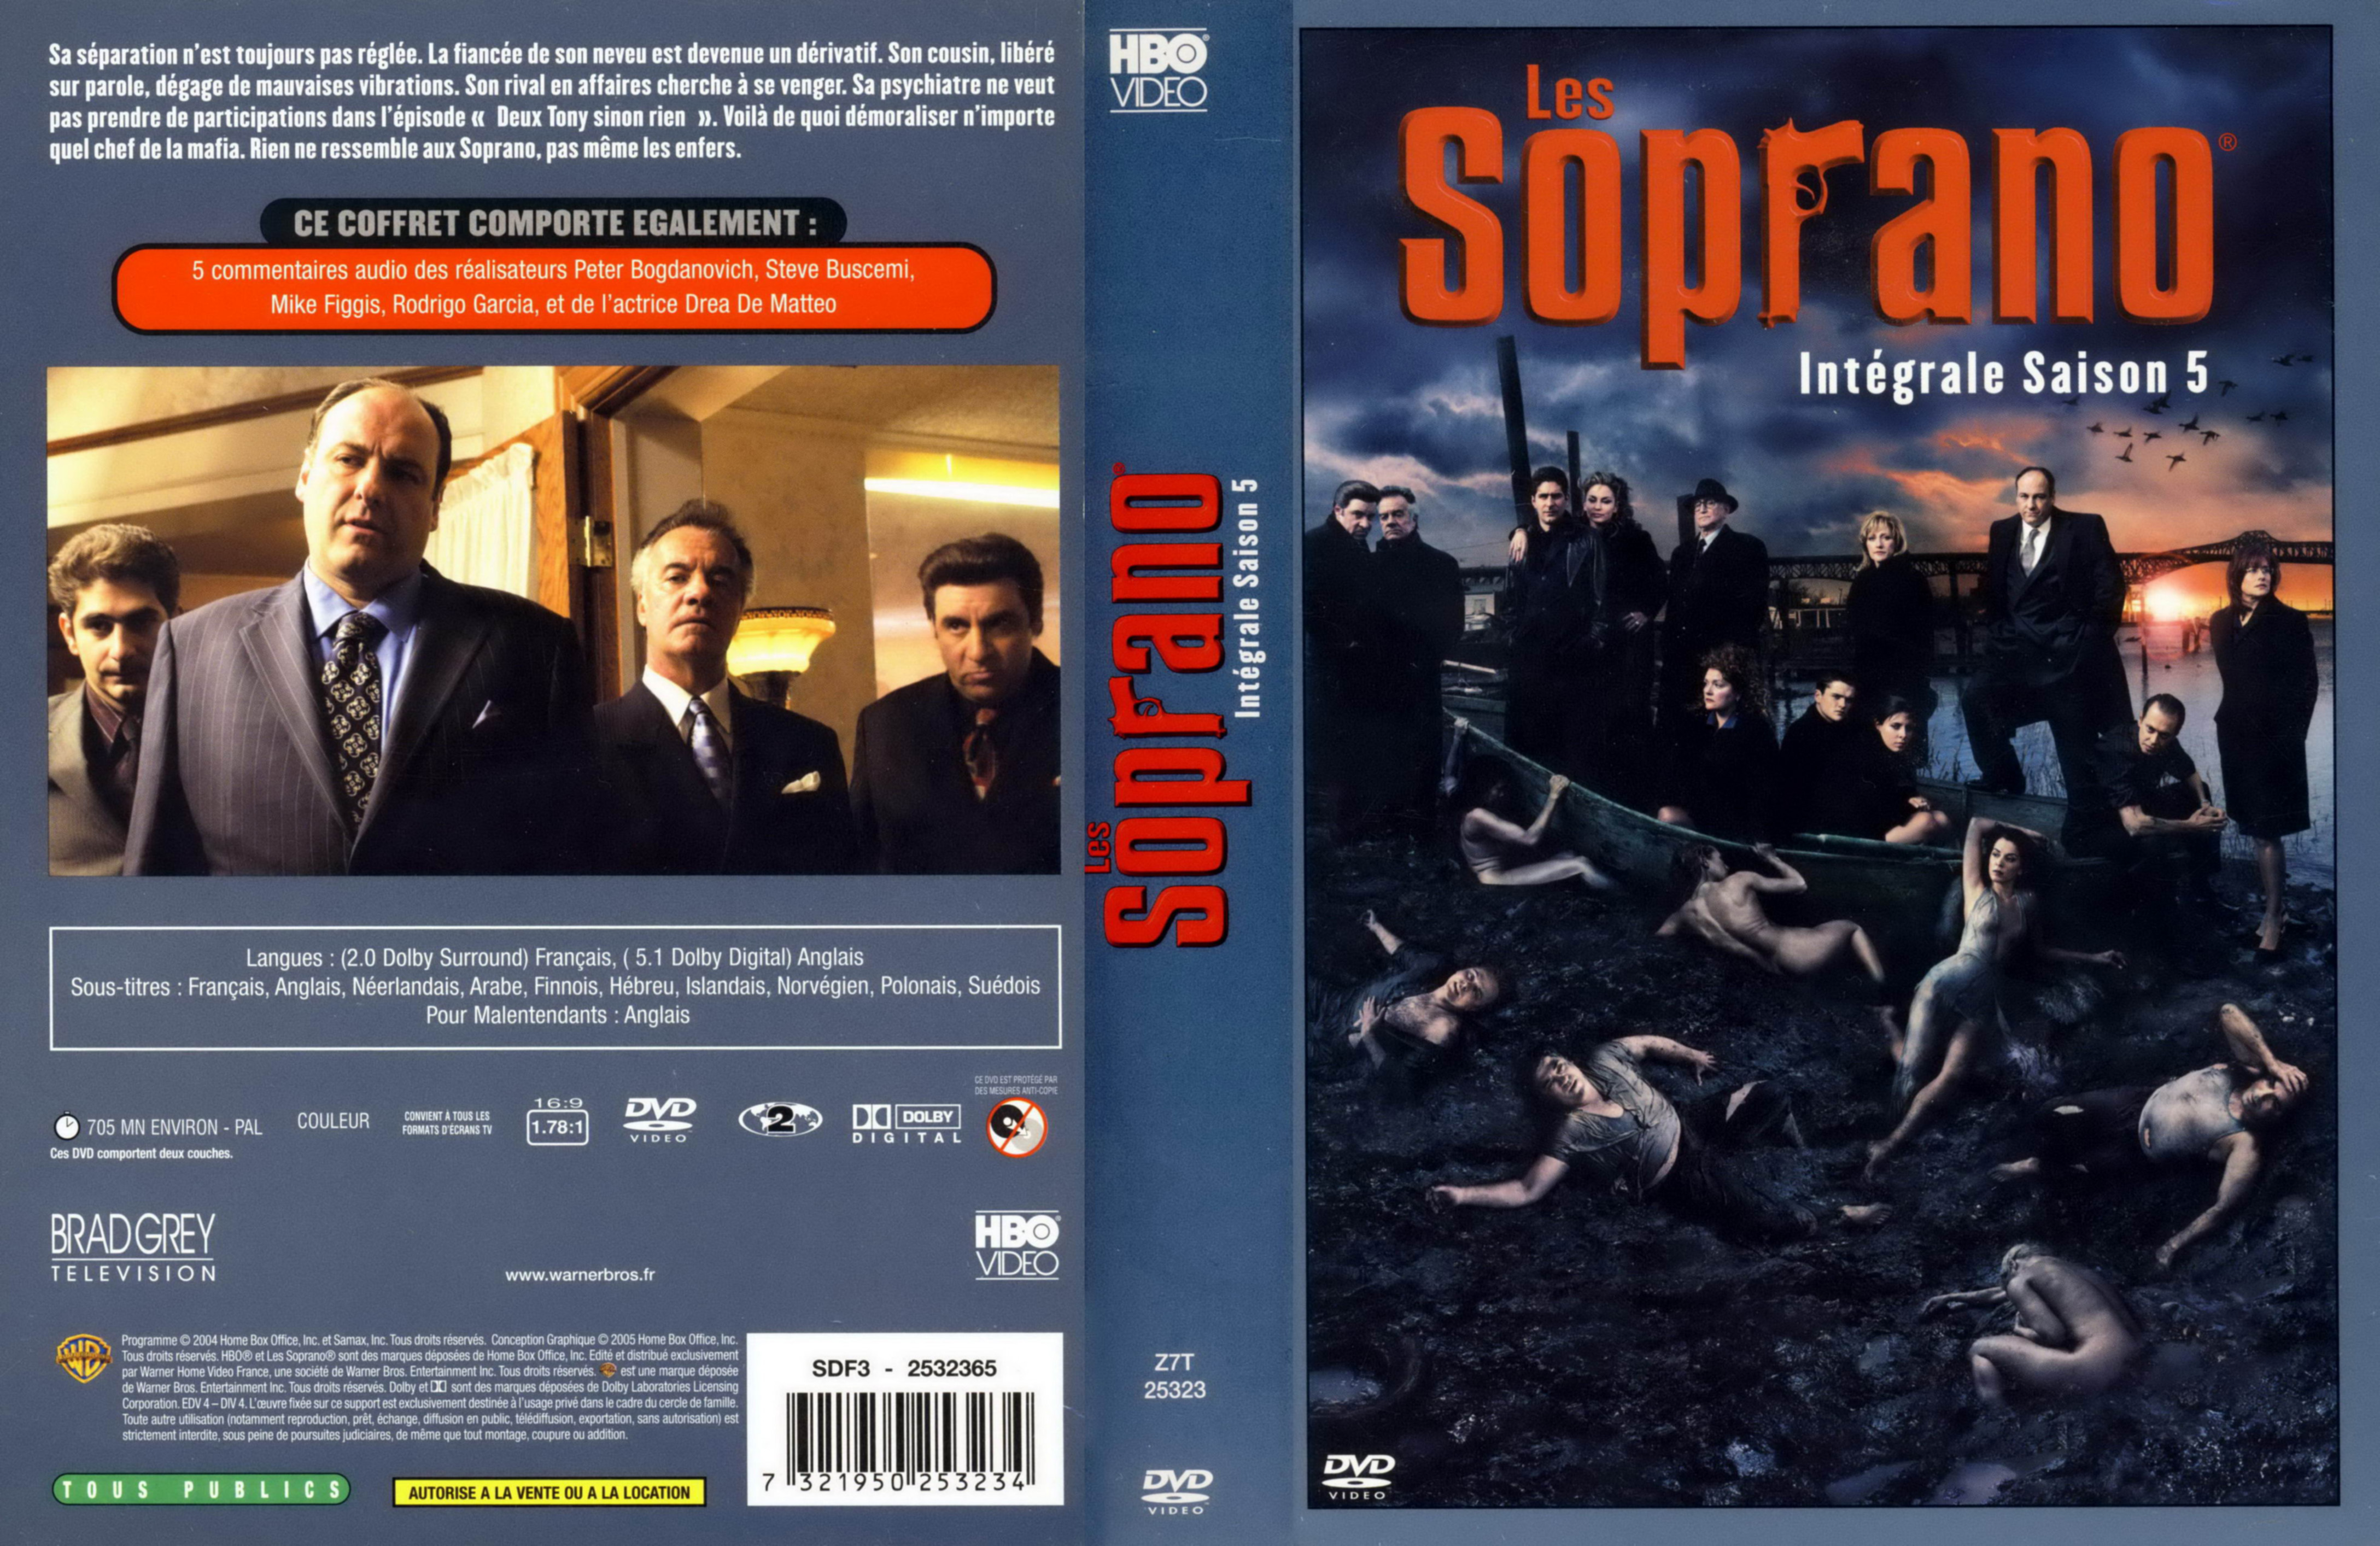 Jaquette DVD Les Soprano Saison 5 COFFRET